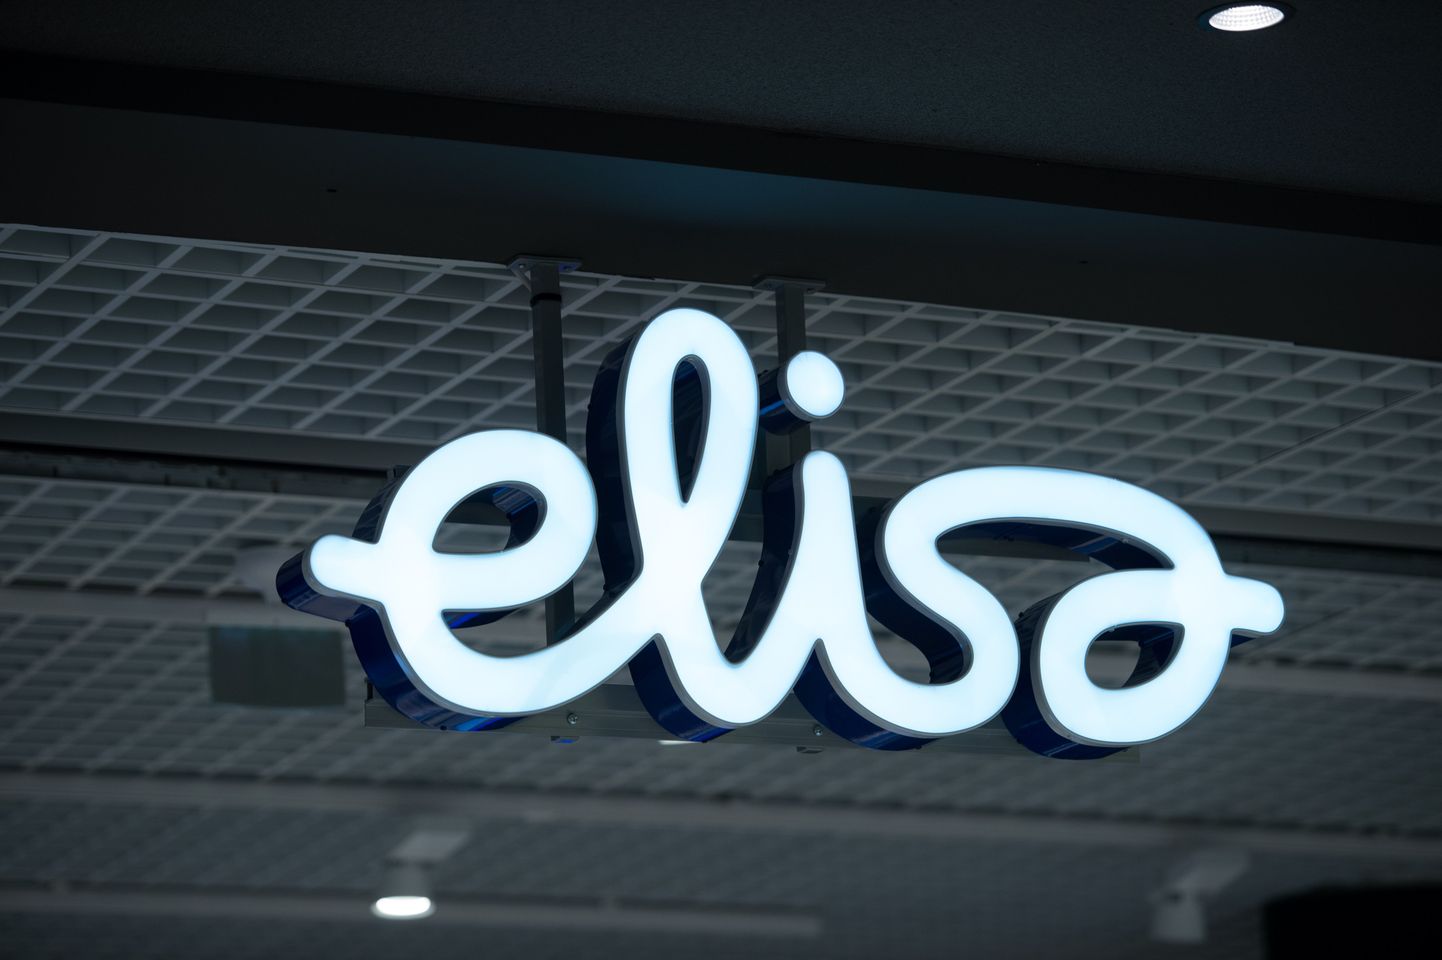 Логотип Elisa. Иллюстративное фото.